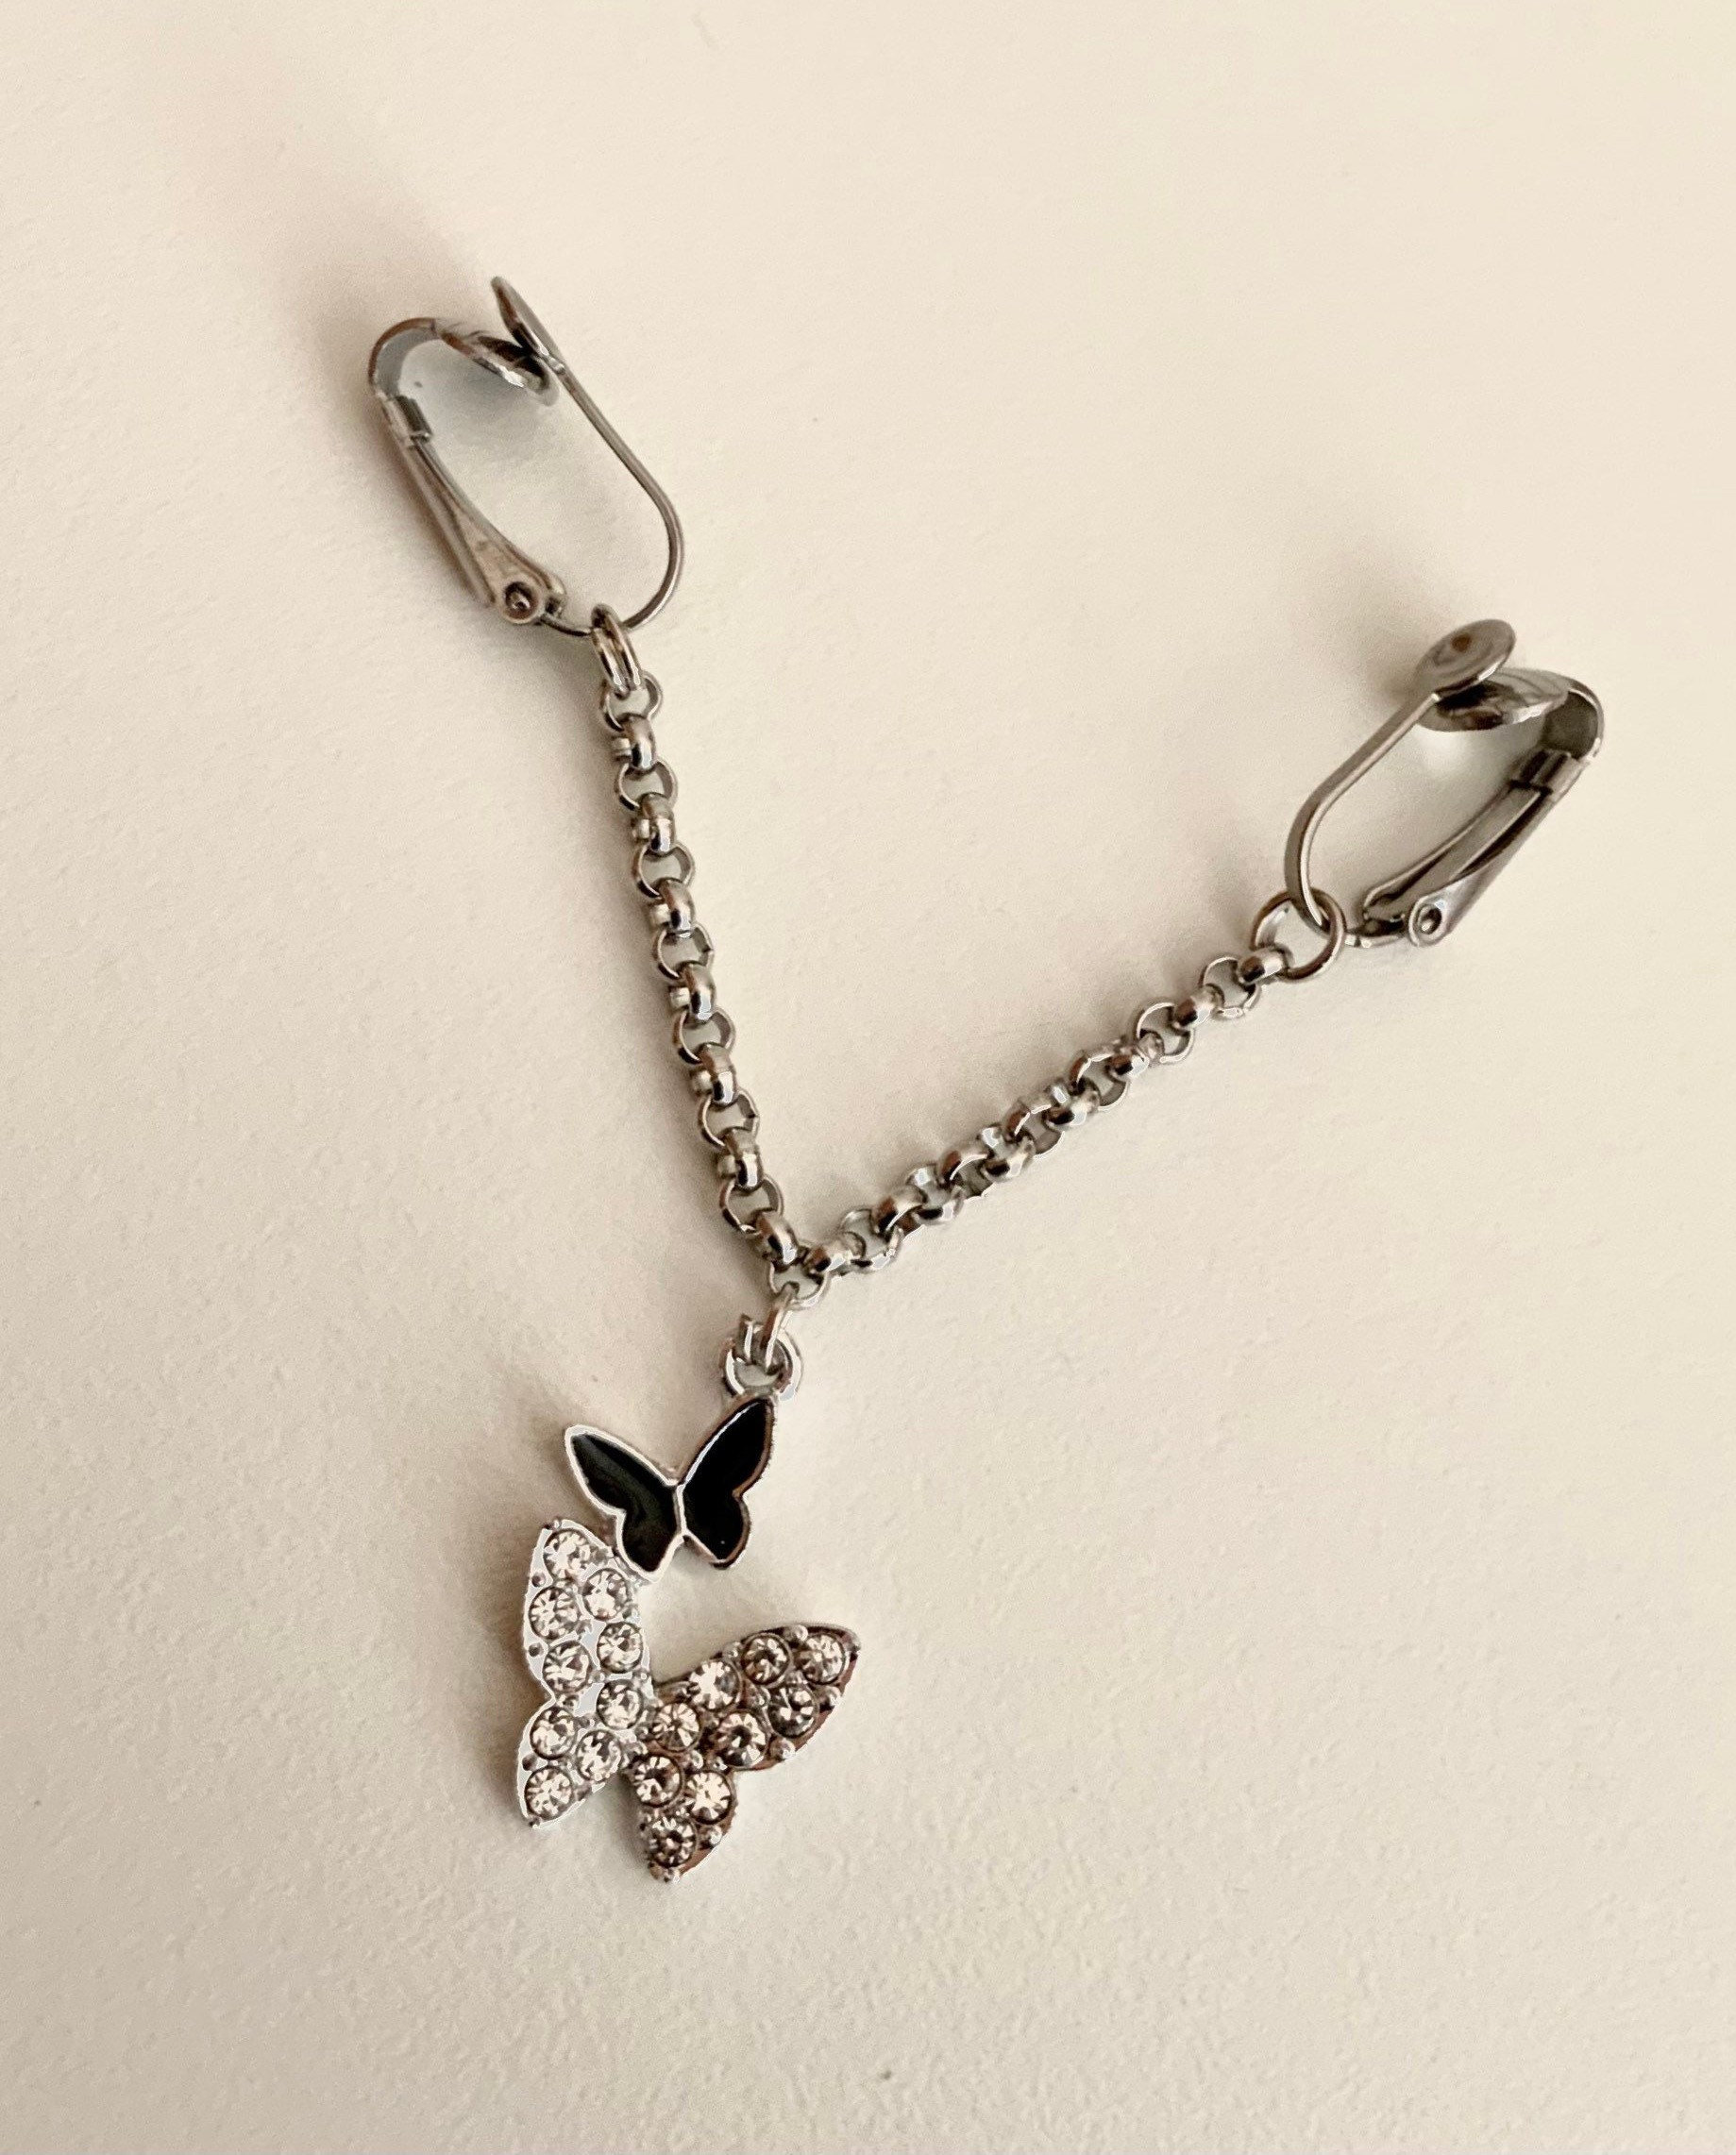 Labia Chain Clip and Necklace Set Clit Clipvaginal